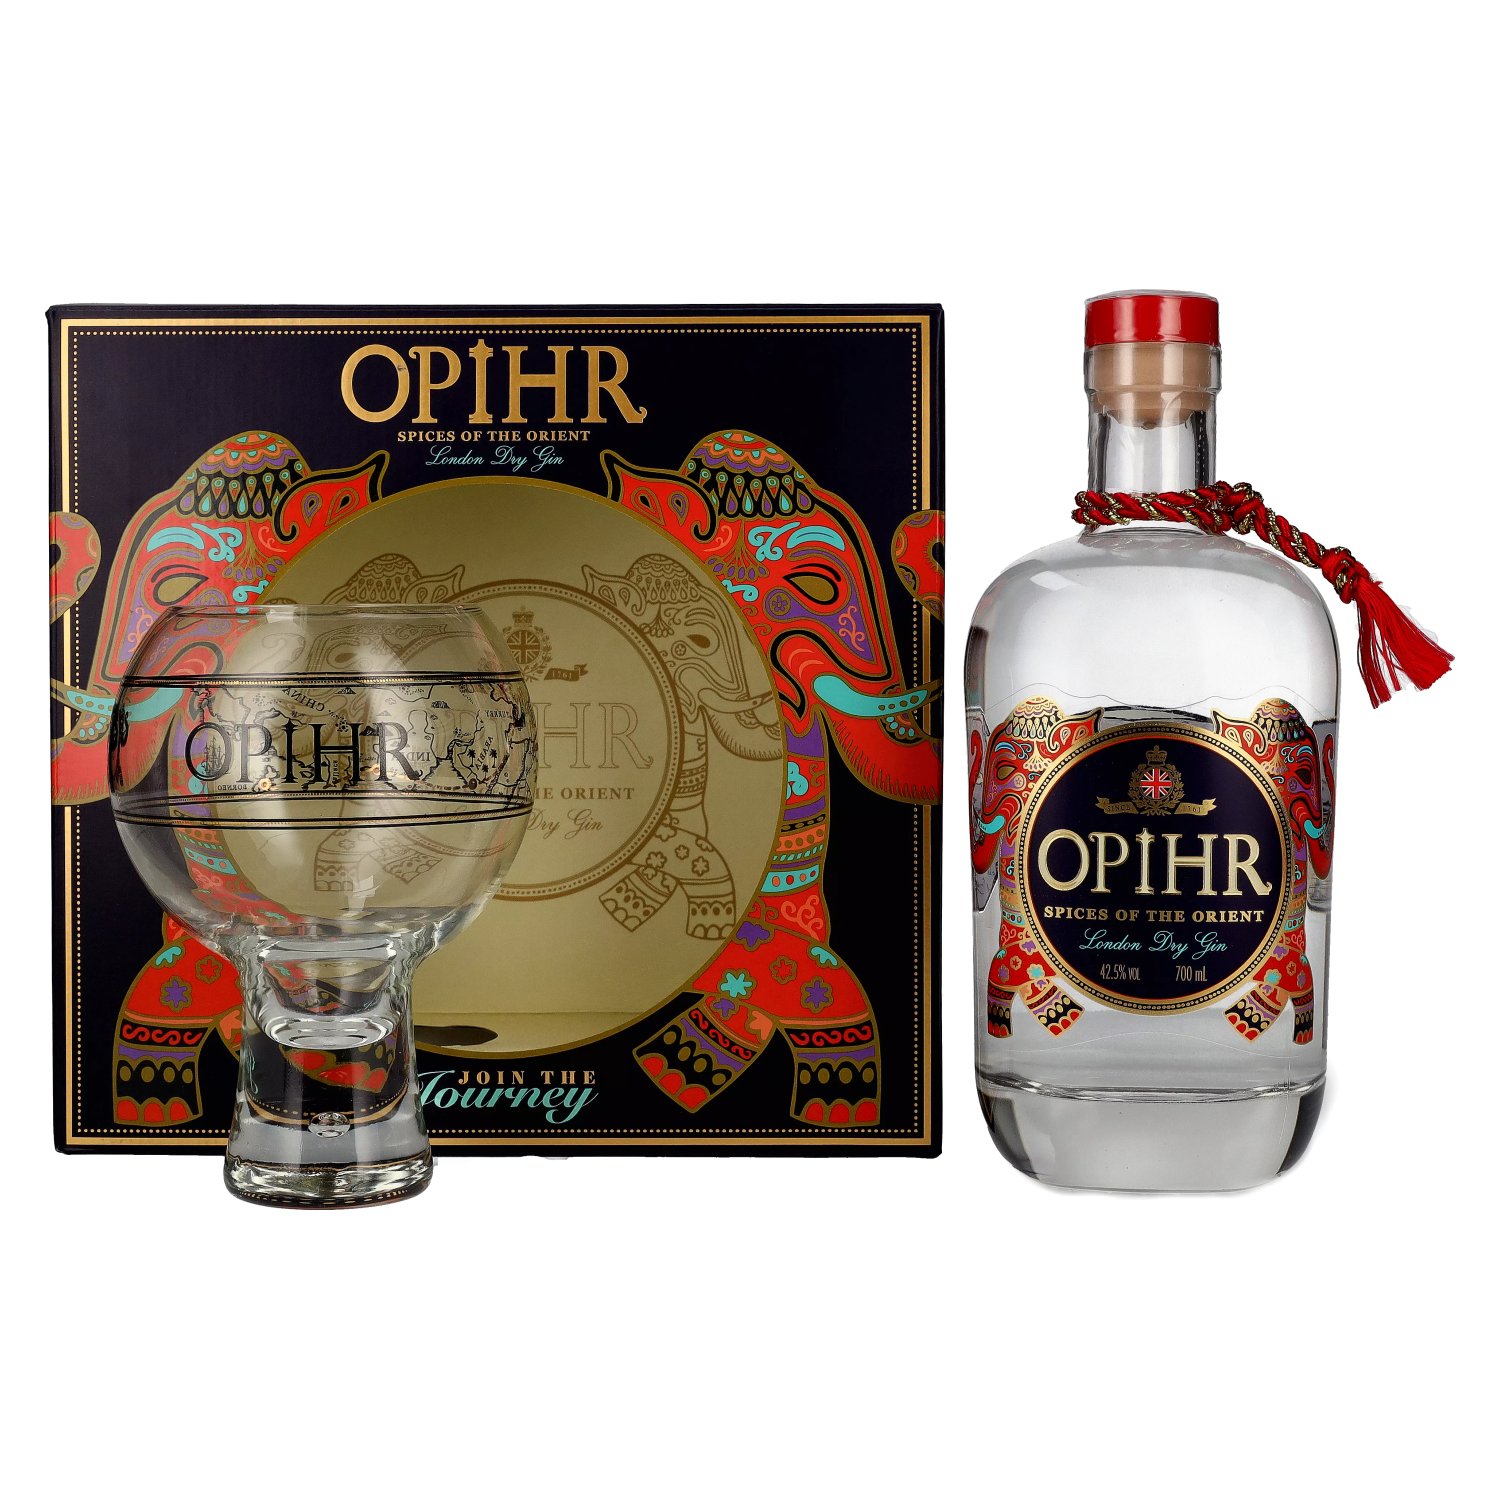 Opihr ORIENTAL SPICED London mit Dry 0,7l Gin Vol. Geschenkbox in 42,5% Globe-Glas